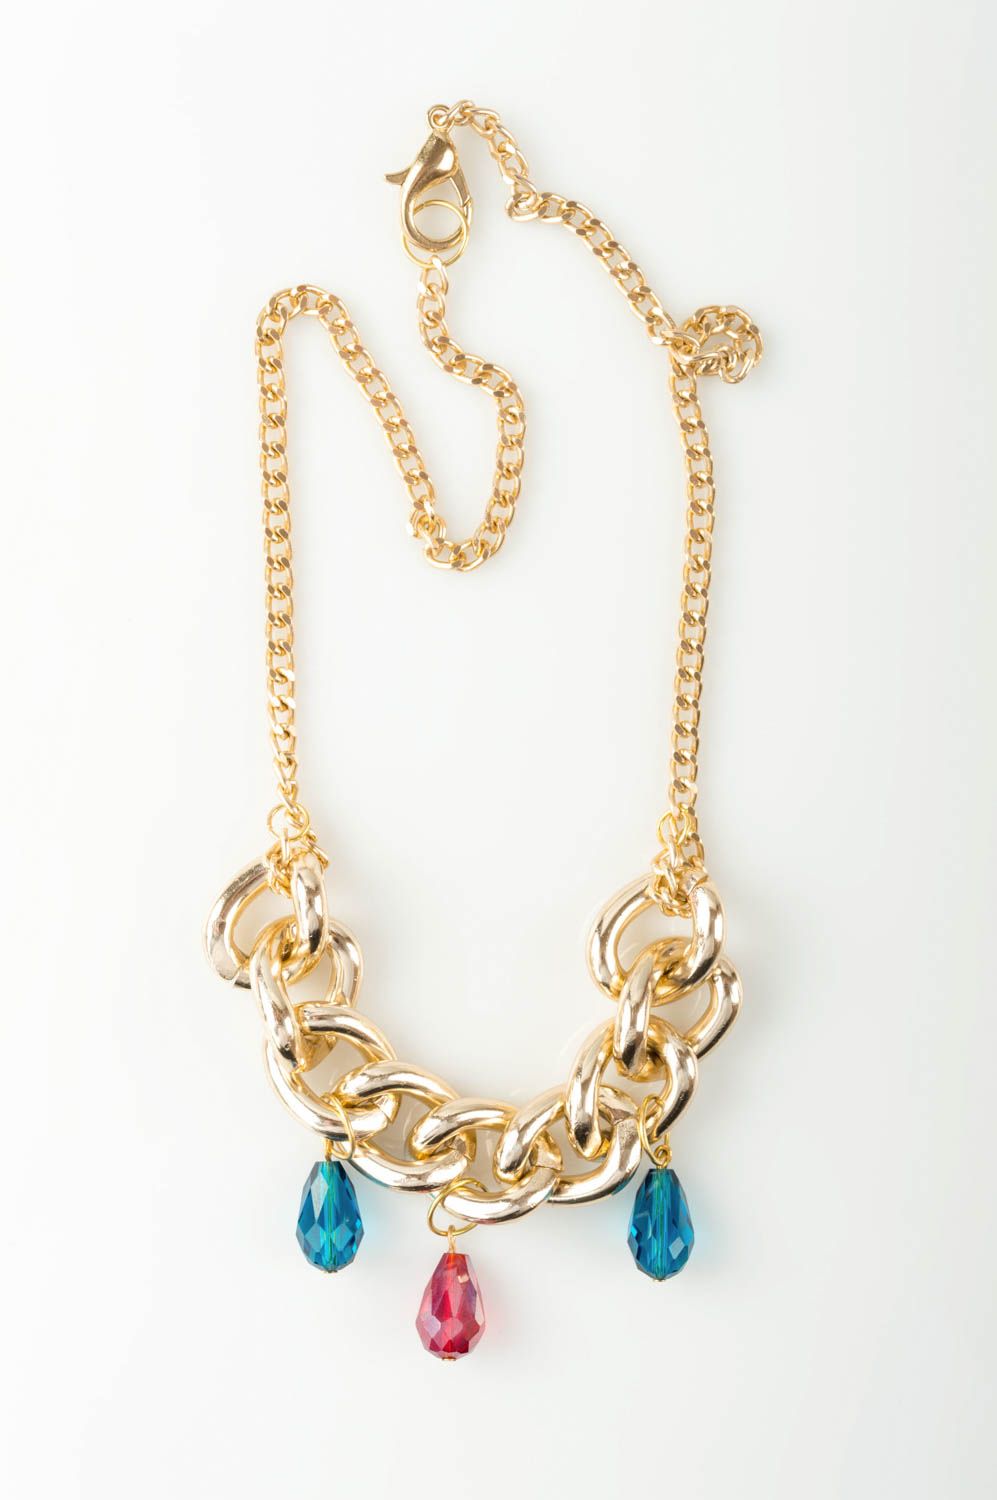 Handmade beautiful pendant stylish female necklace jewelry made of glass photo 2